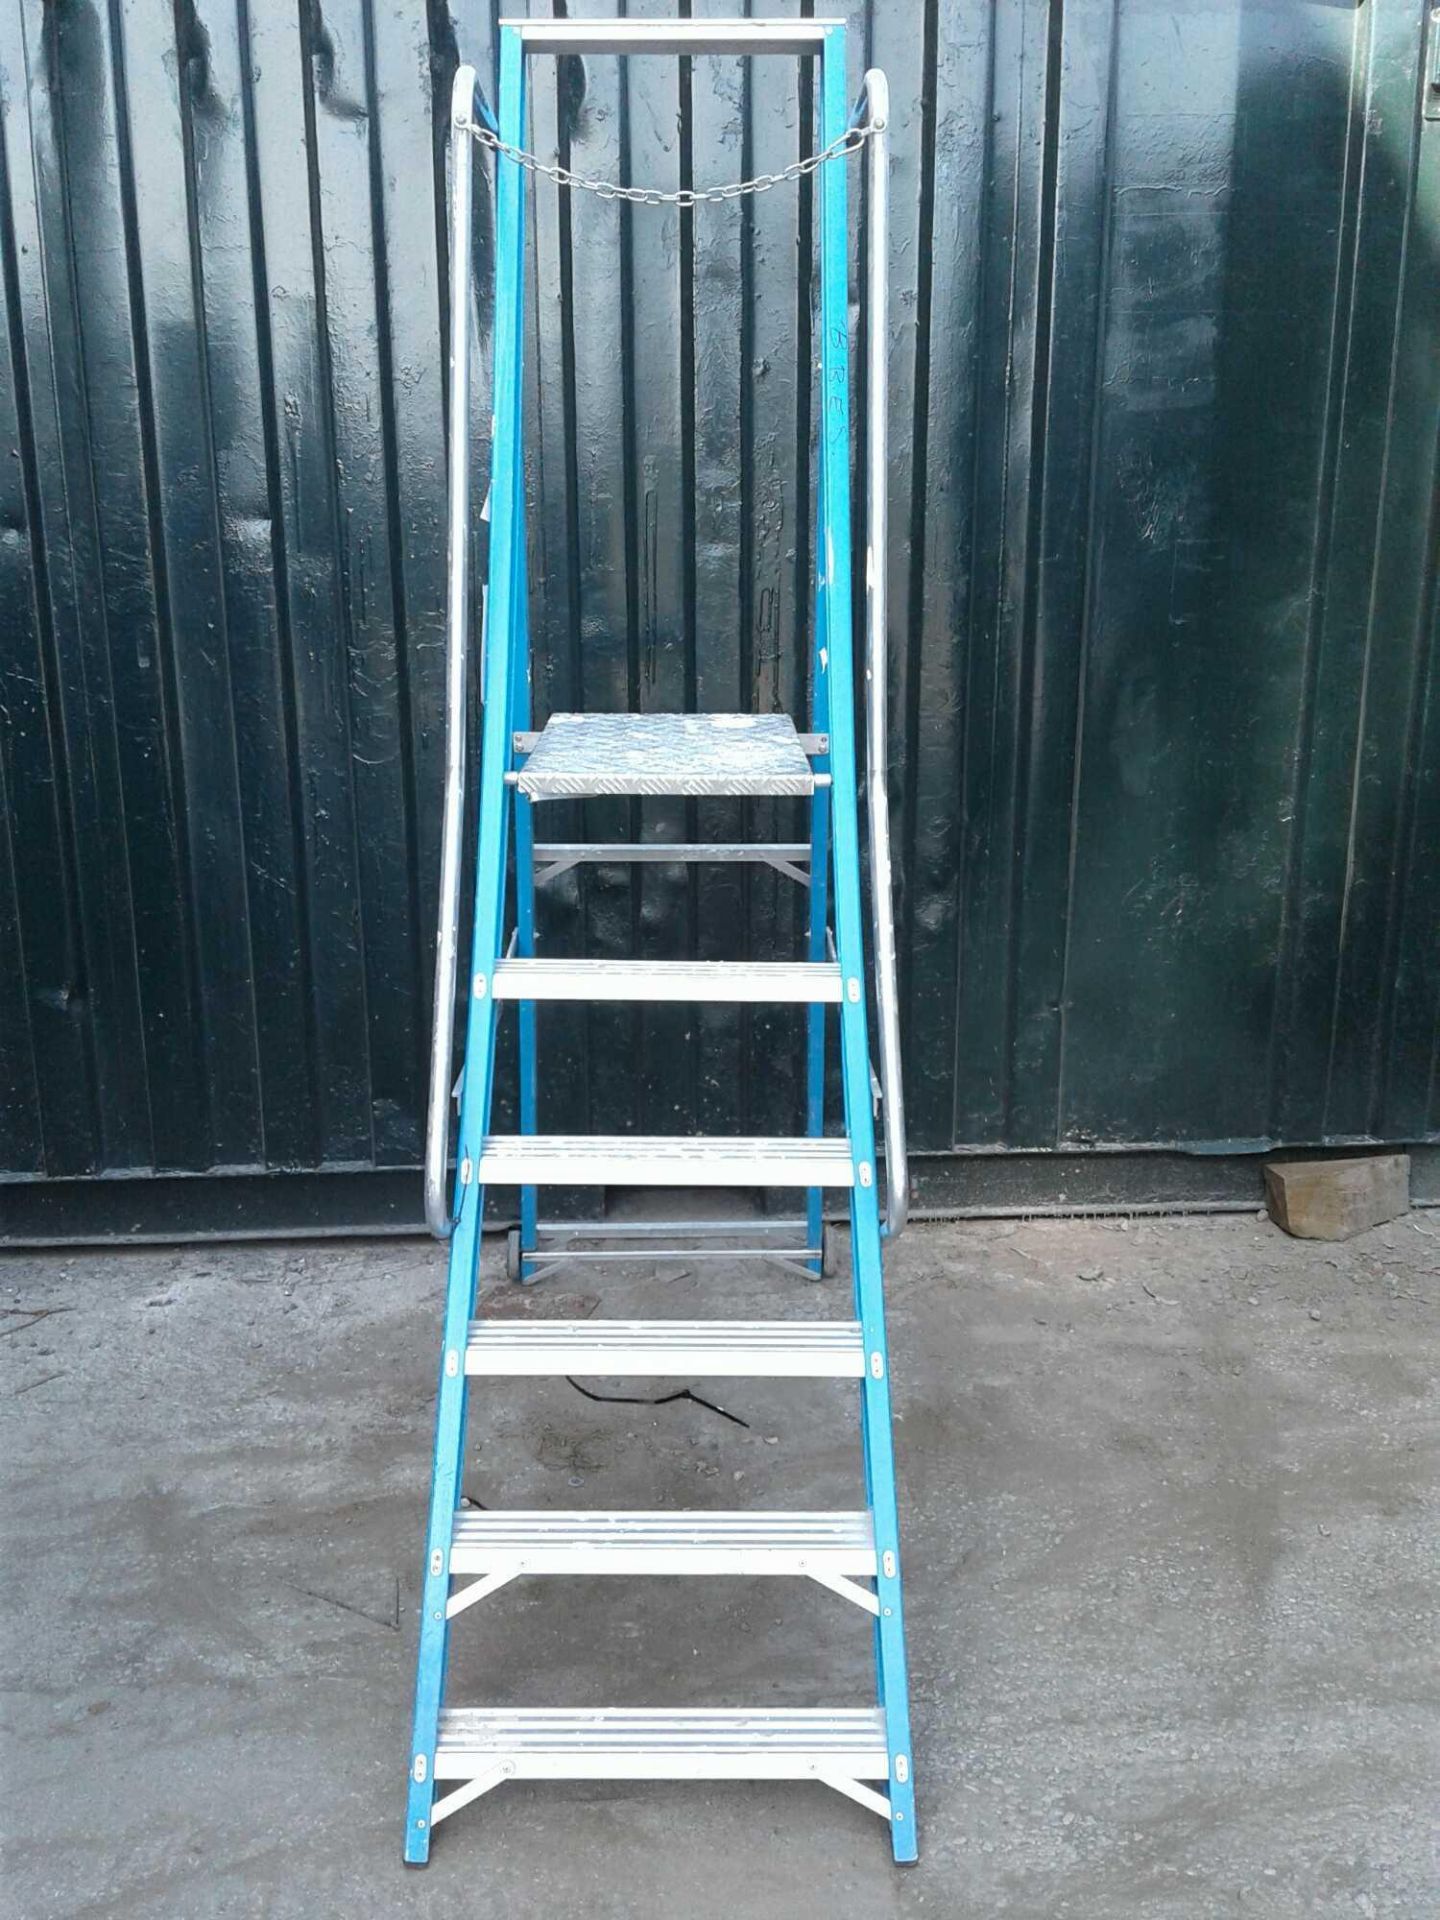 platform step ladders - Image 2 of 2